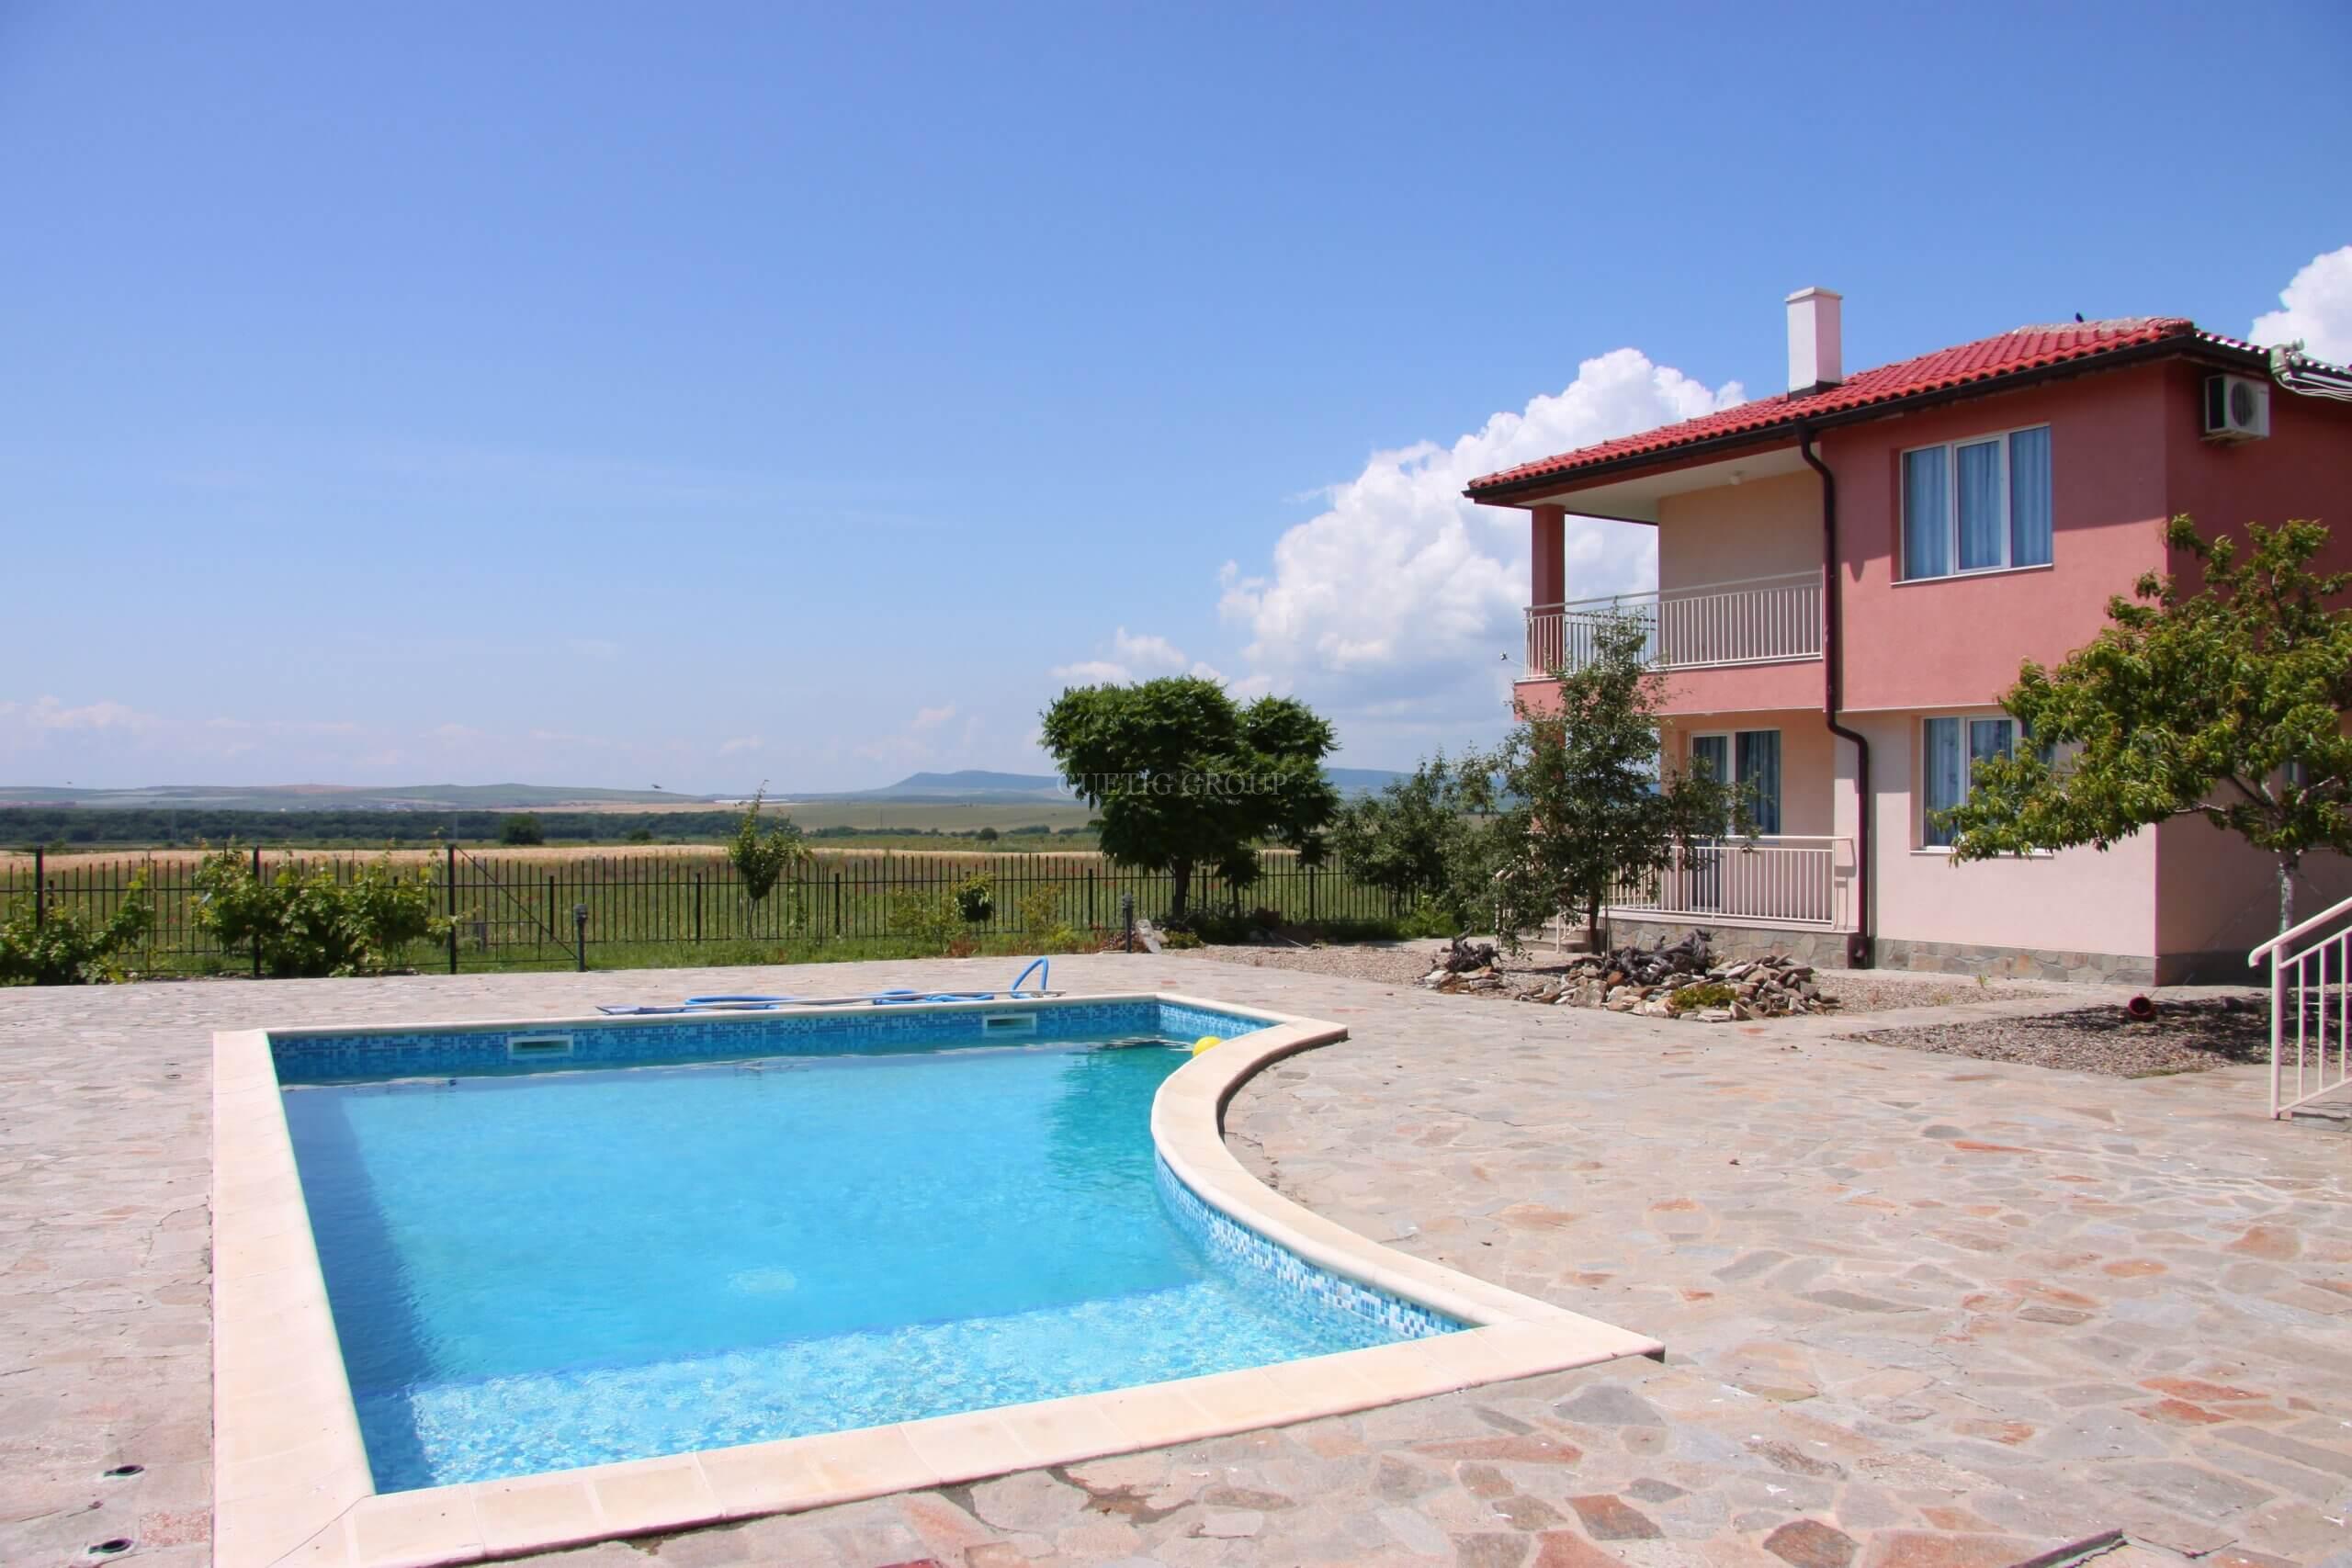 House with 2 floors – pool near Sunny Beach Bulgaria